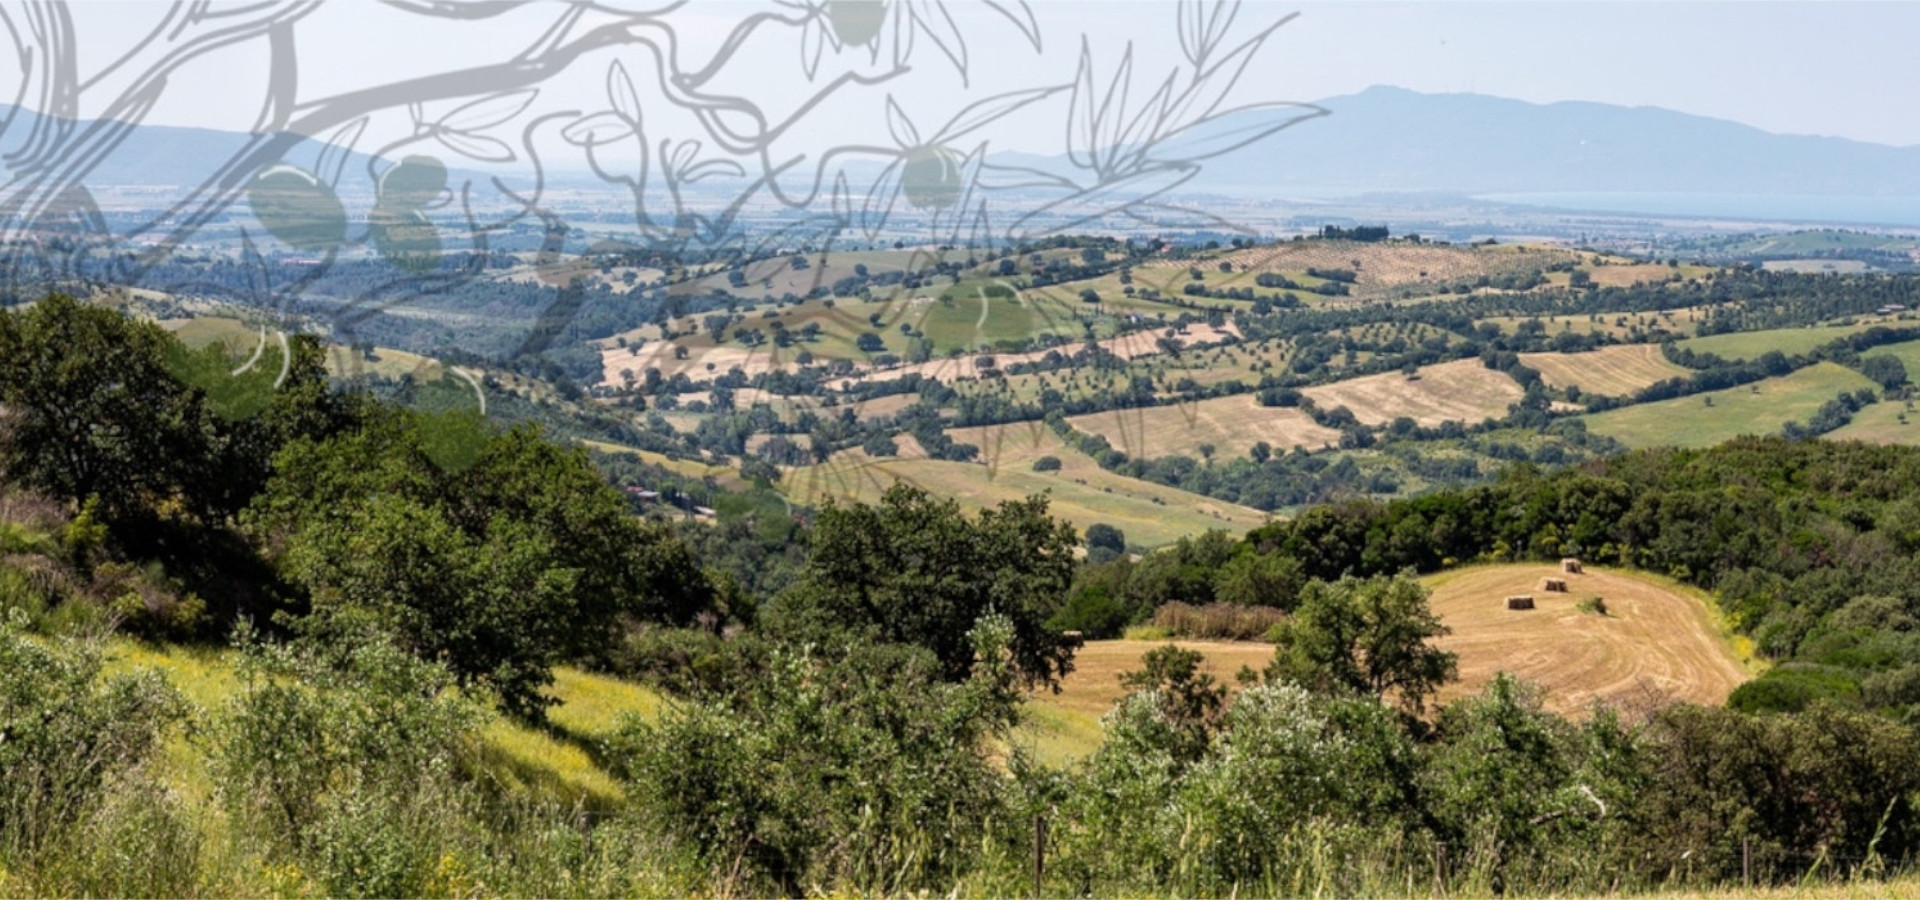 gli oliveti del frantoio san luigi e il territorio e l'ambiente